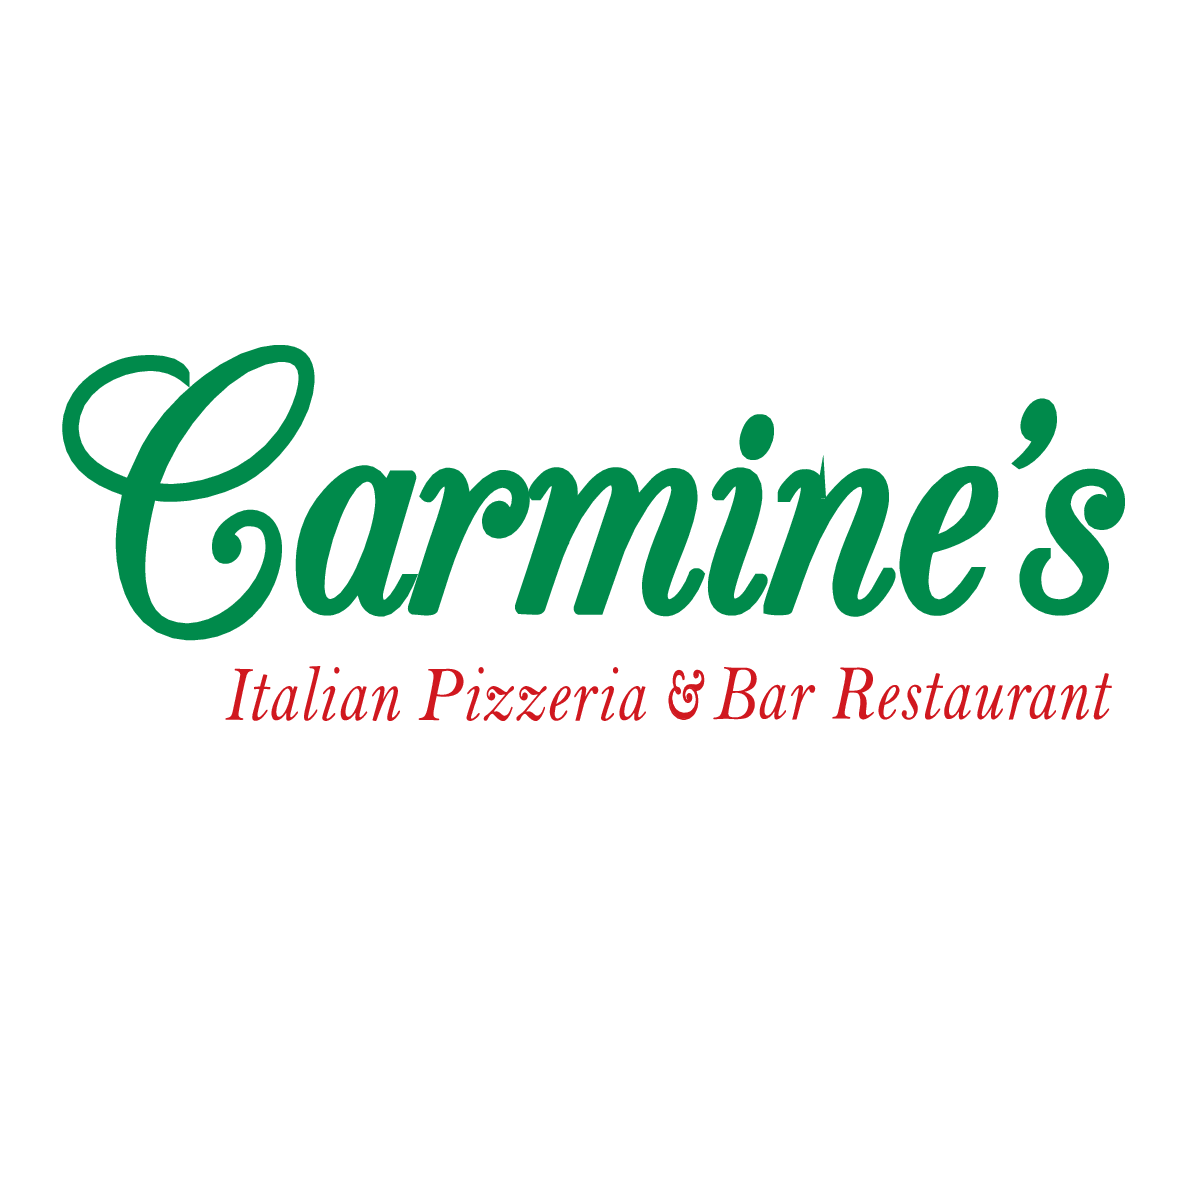 Carmine's Eatery website